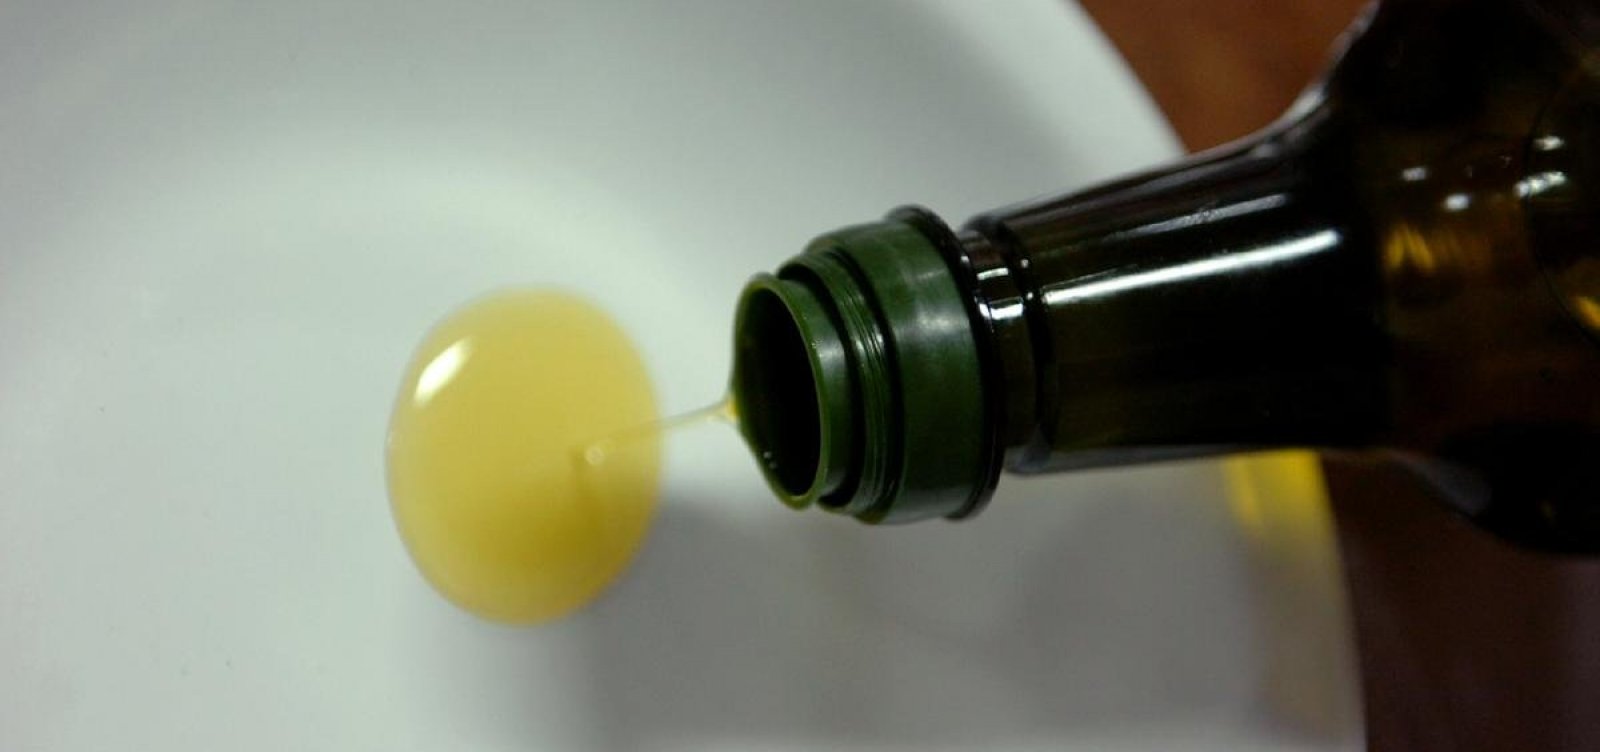 Fraude de azeite de oliva está mais aprimorada, diz governo